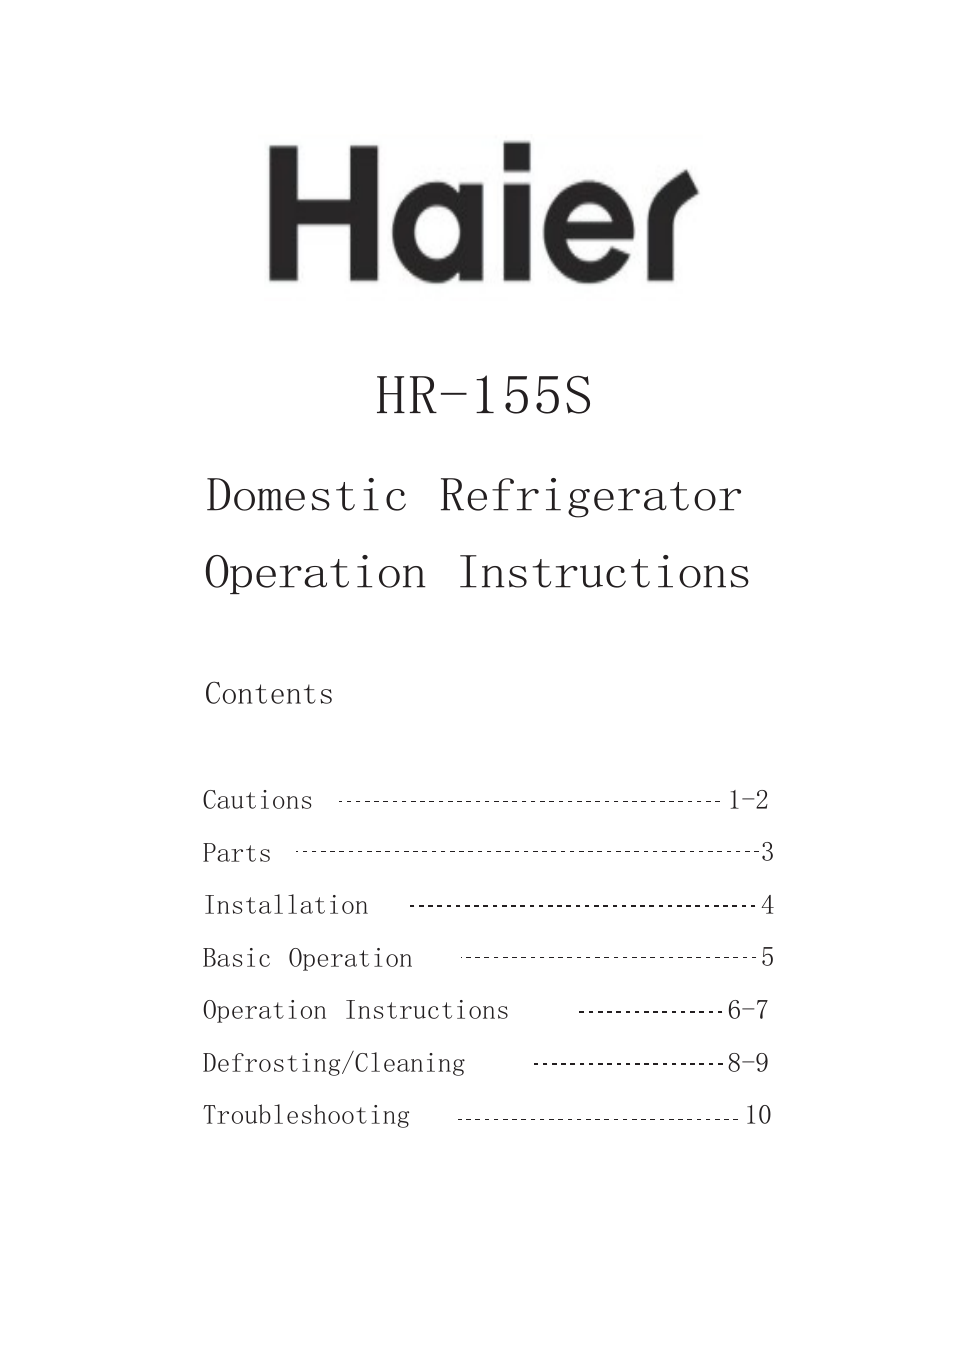 HR-155S